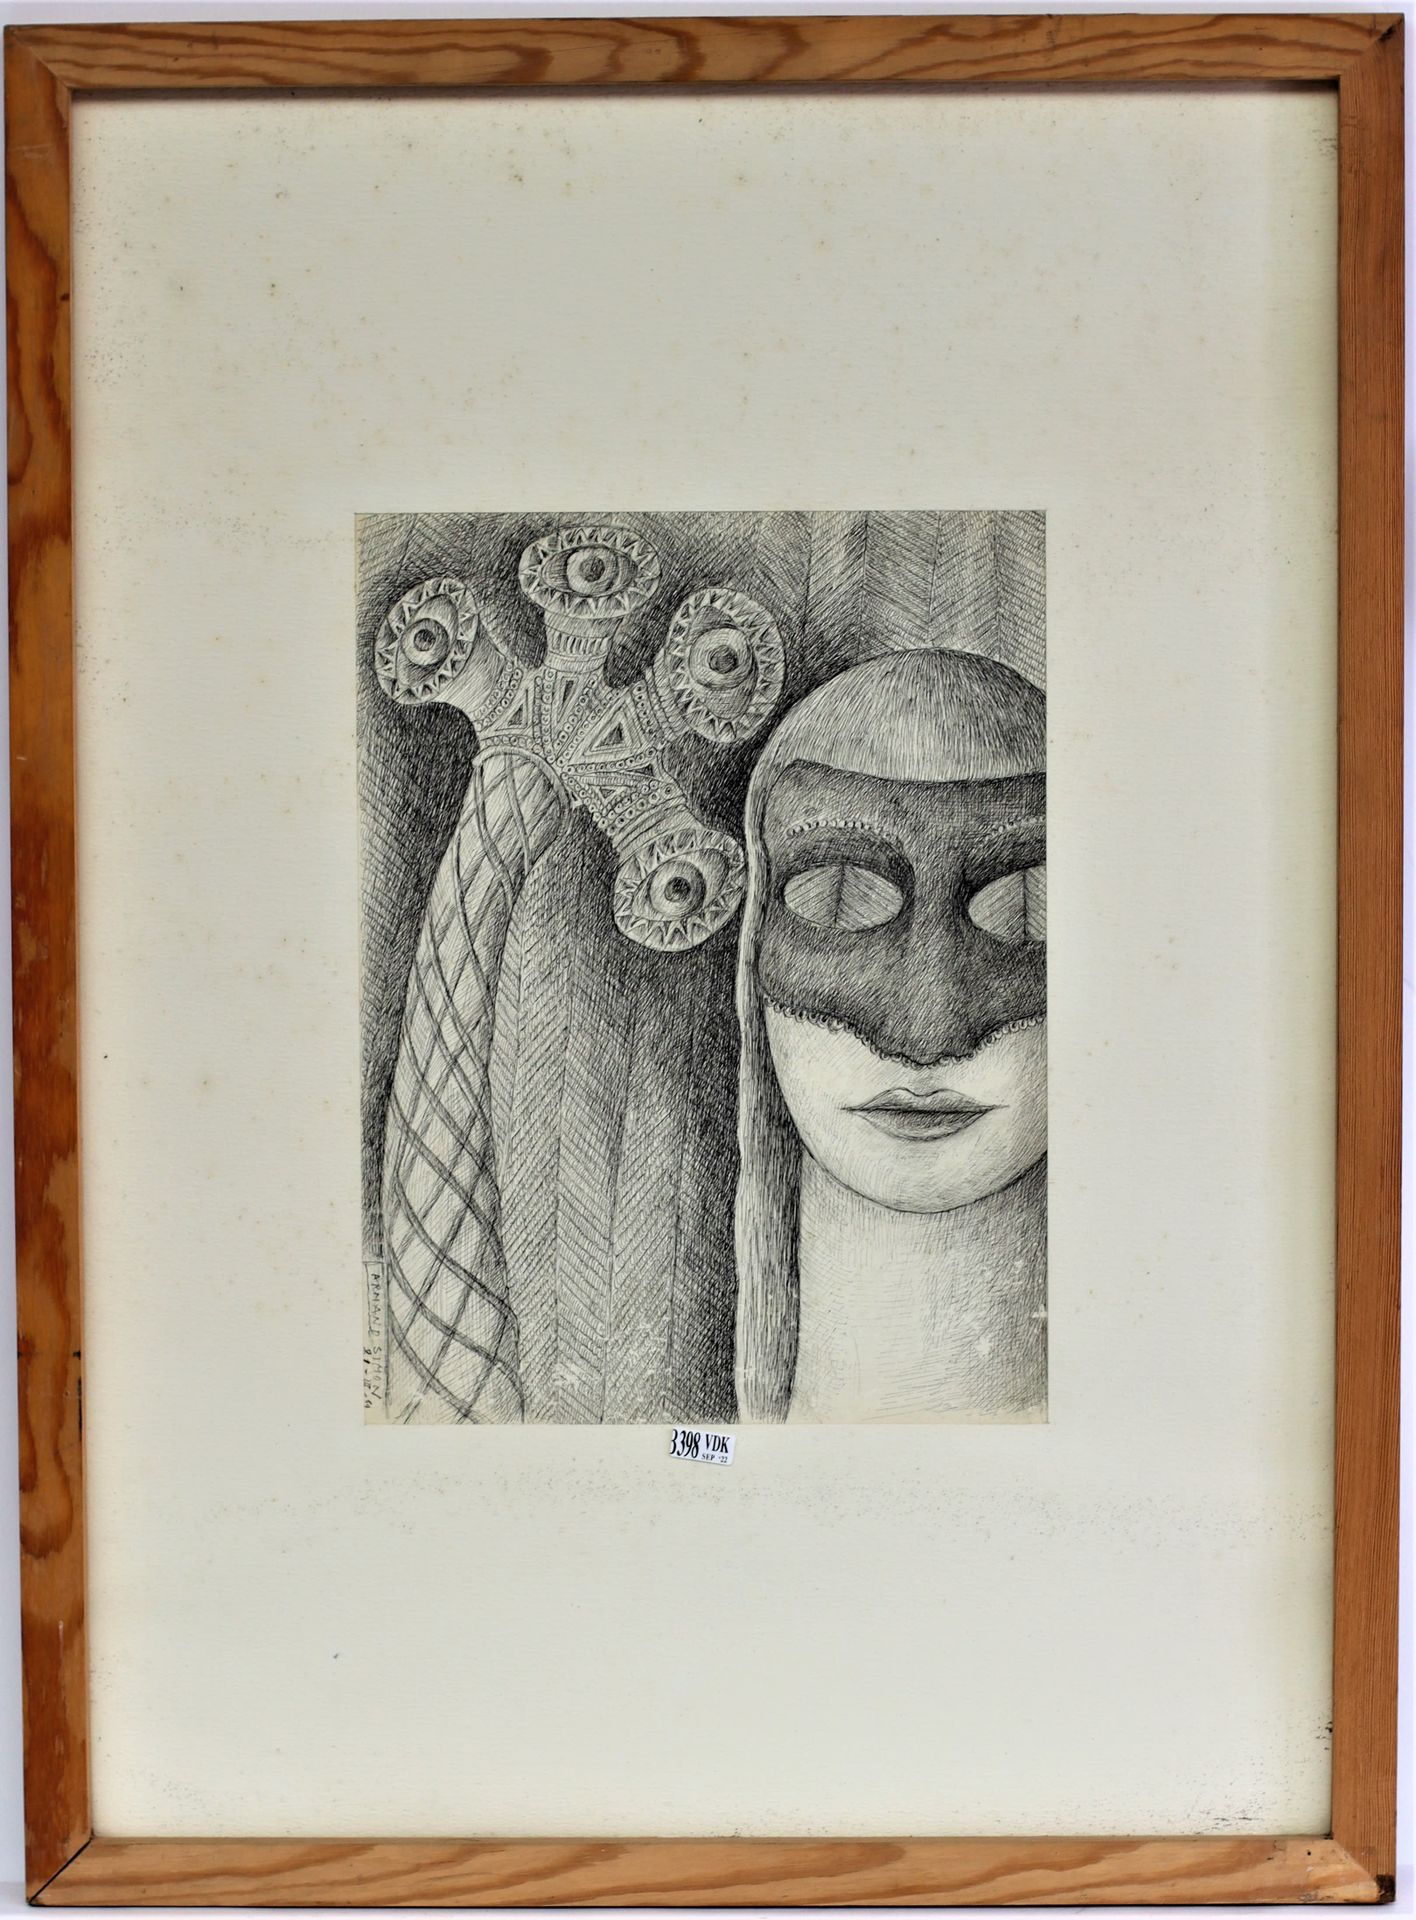 Null Tuschezeichnung "Die Maske". Signiert Armand Simon 21/3/69. Dim.:36x27cm.